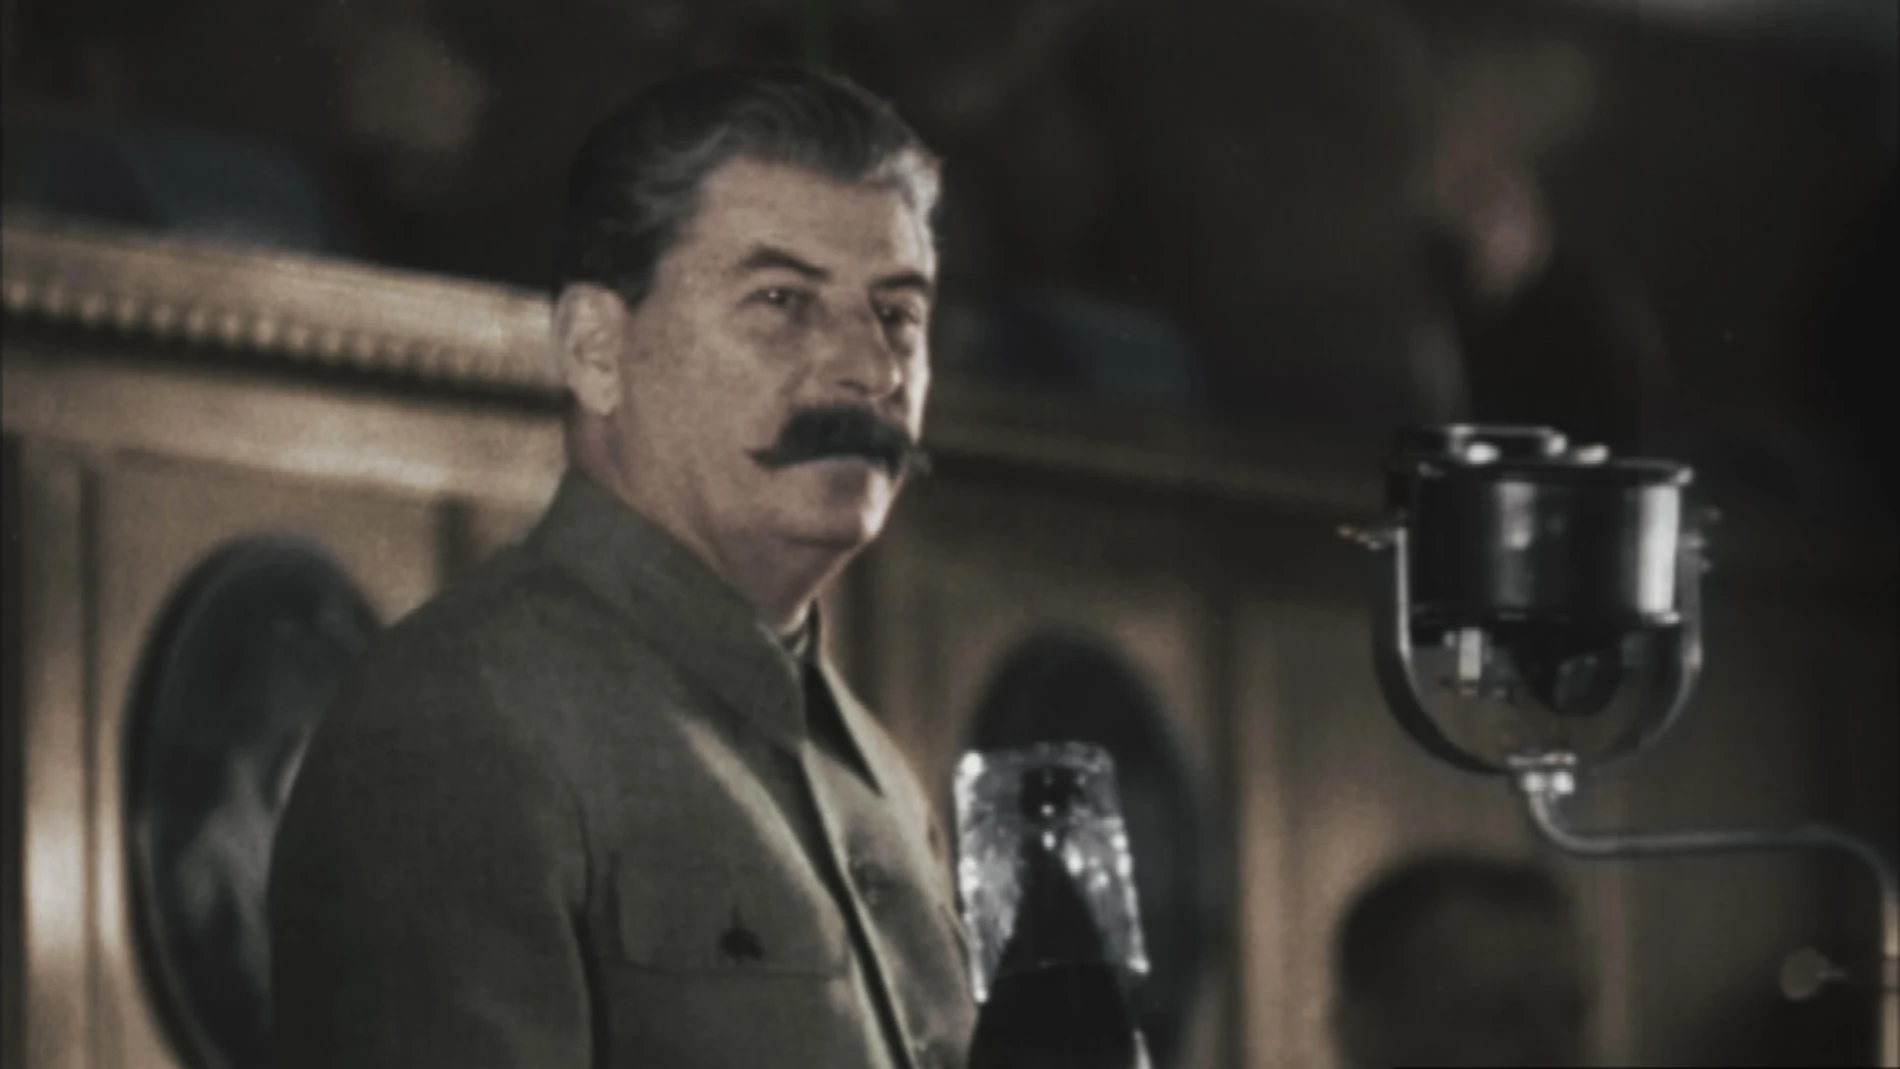 Josef Stalin fue uno de los líderes políticos que más se preocupó por extraer información de amigos y enemigos a través de sus servicios de inteligencia